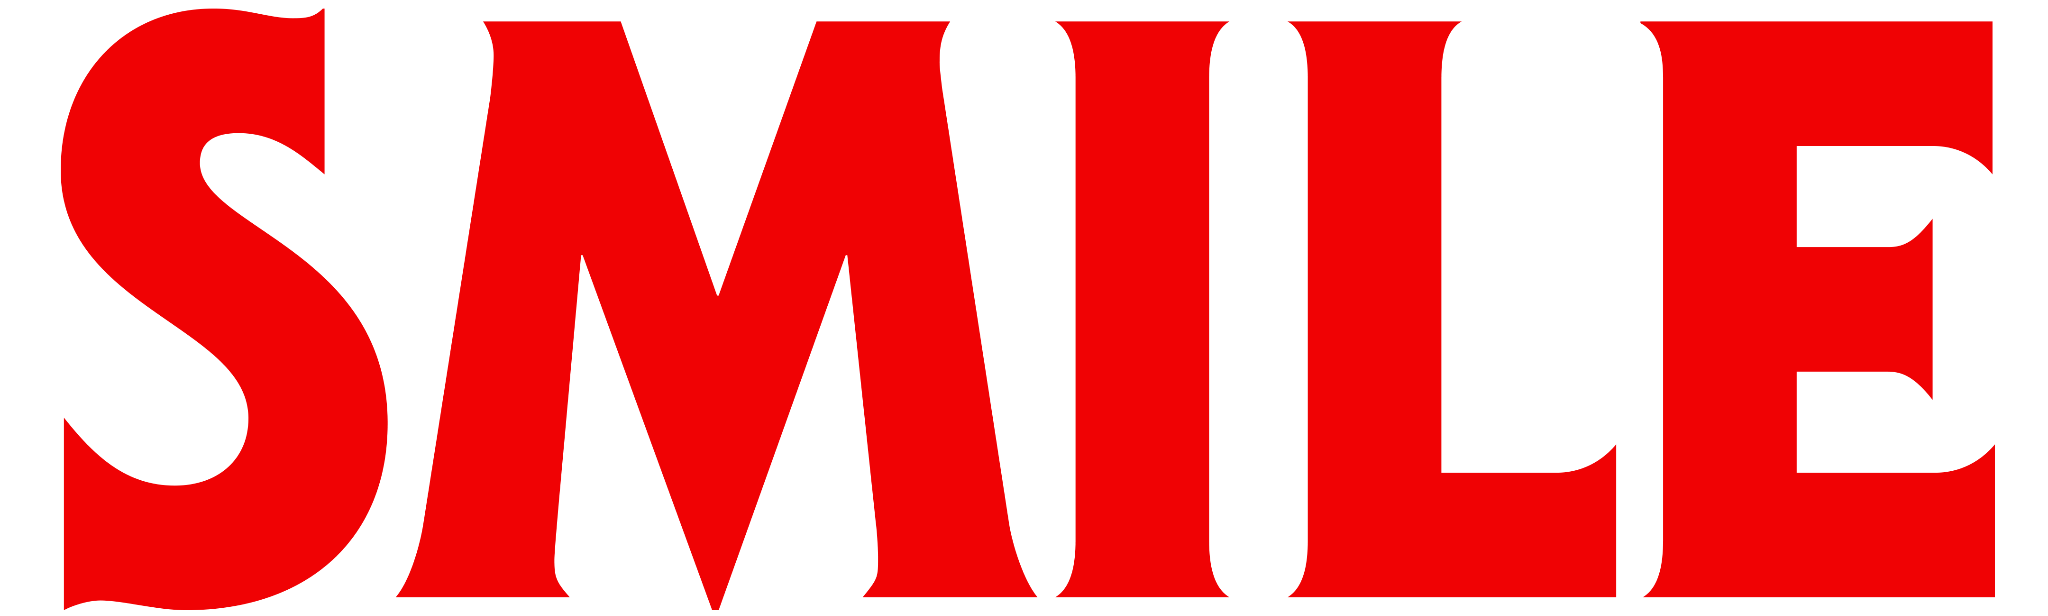 THAI Smile logo (updated 2023) - Airhex